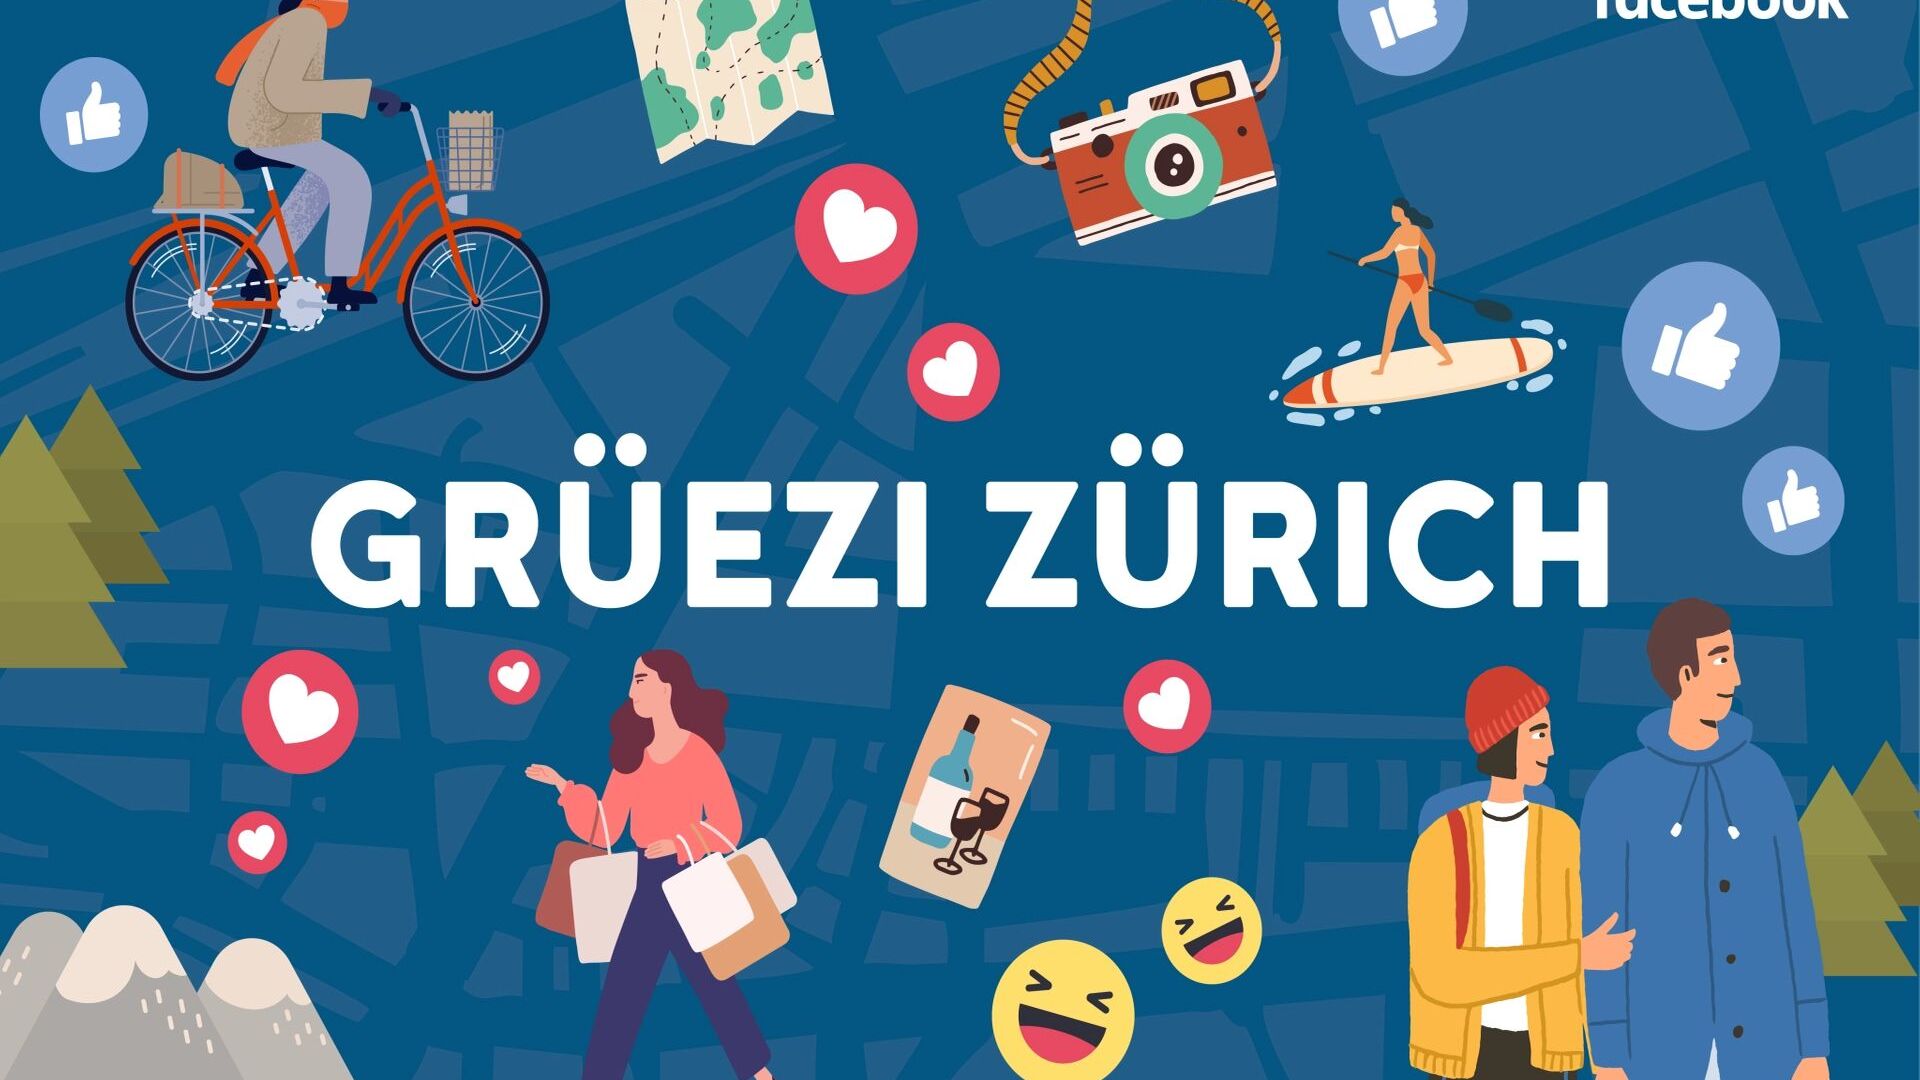 La società Meta di Mark Zuckerberg ha presentato la Community City Guide di Zurigo, un “manuale” di fruizione della città creato in collaborazione con cinque gruppi Facebook, il primo della Svizzera